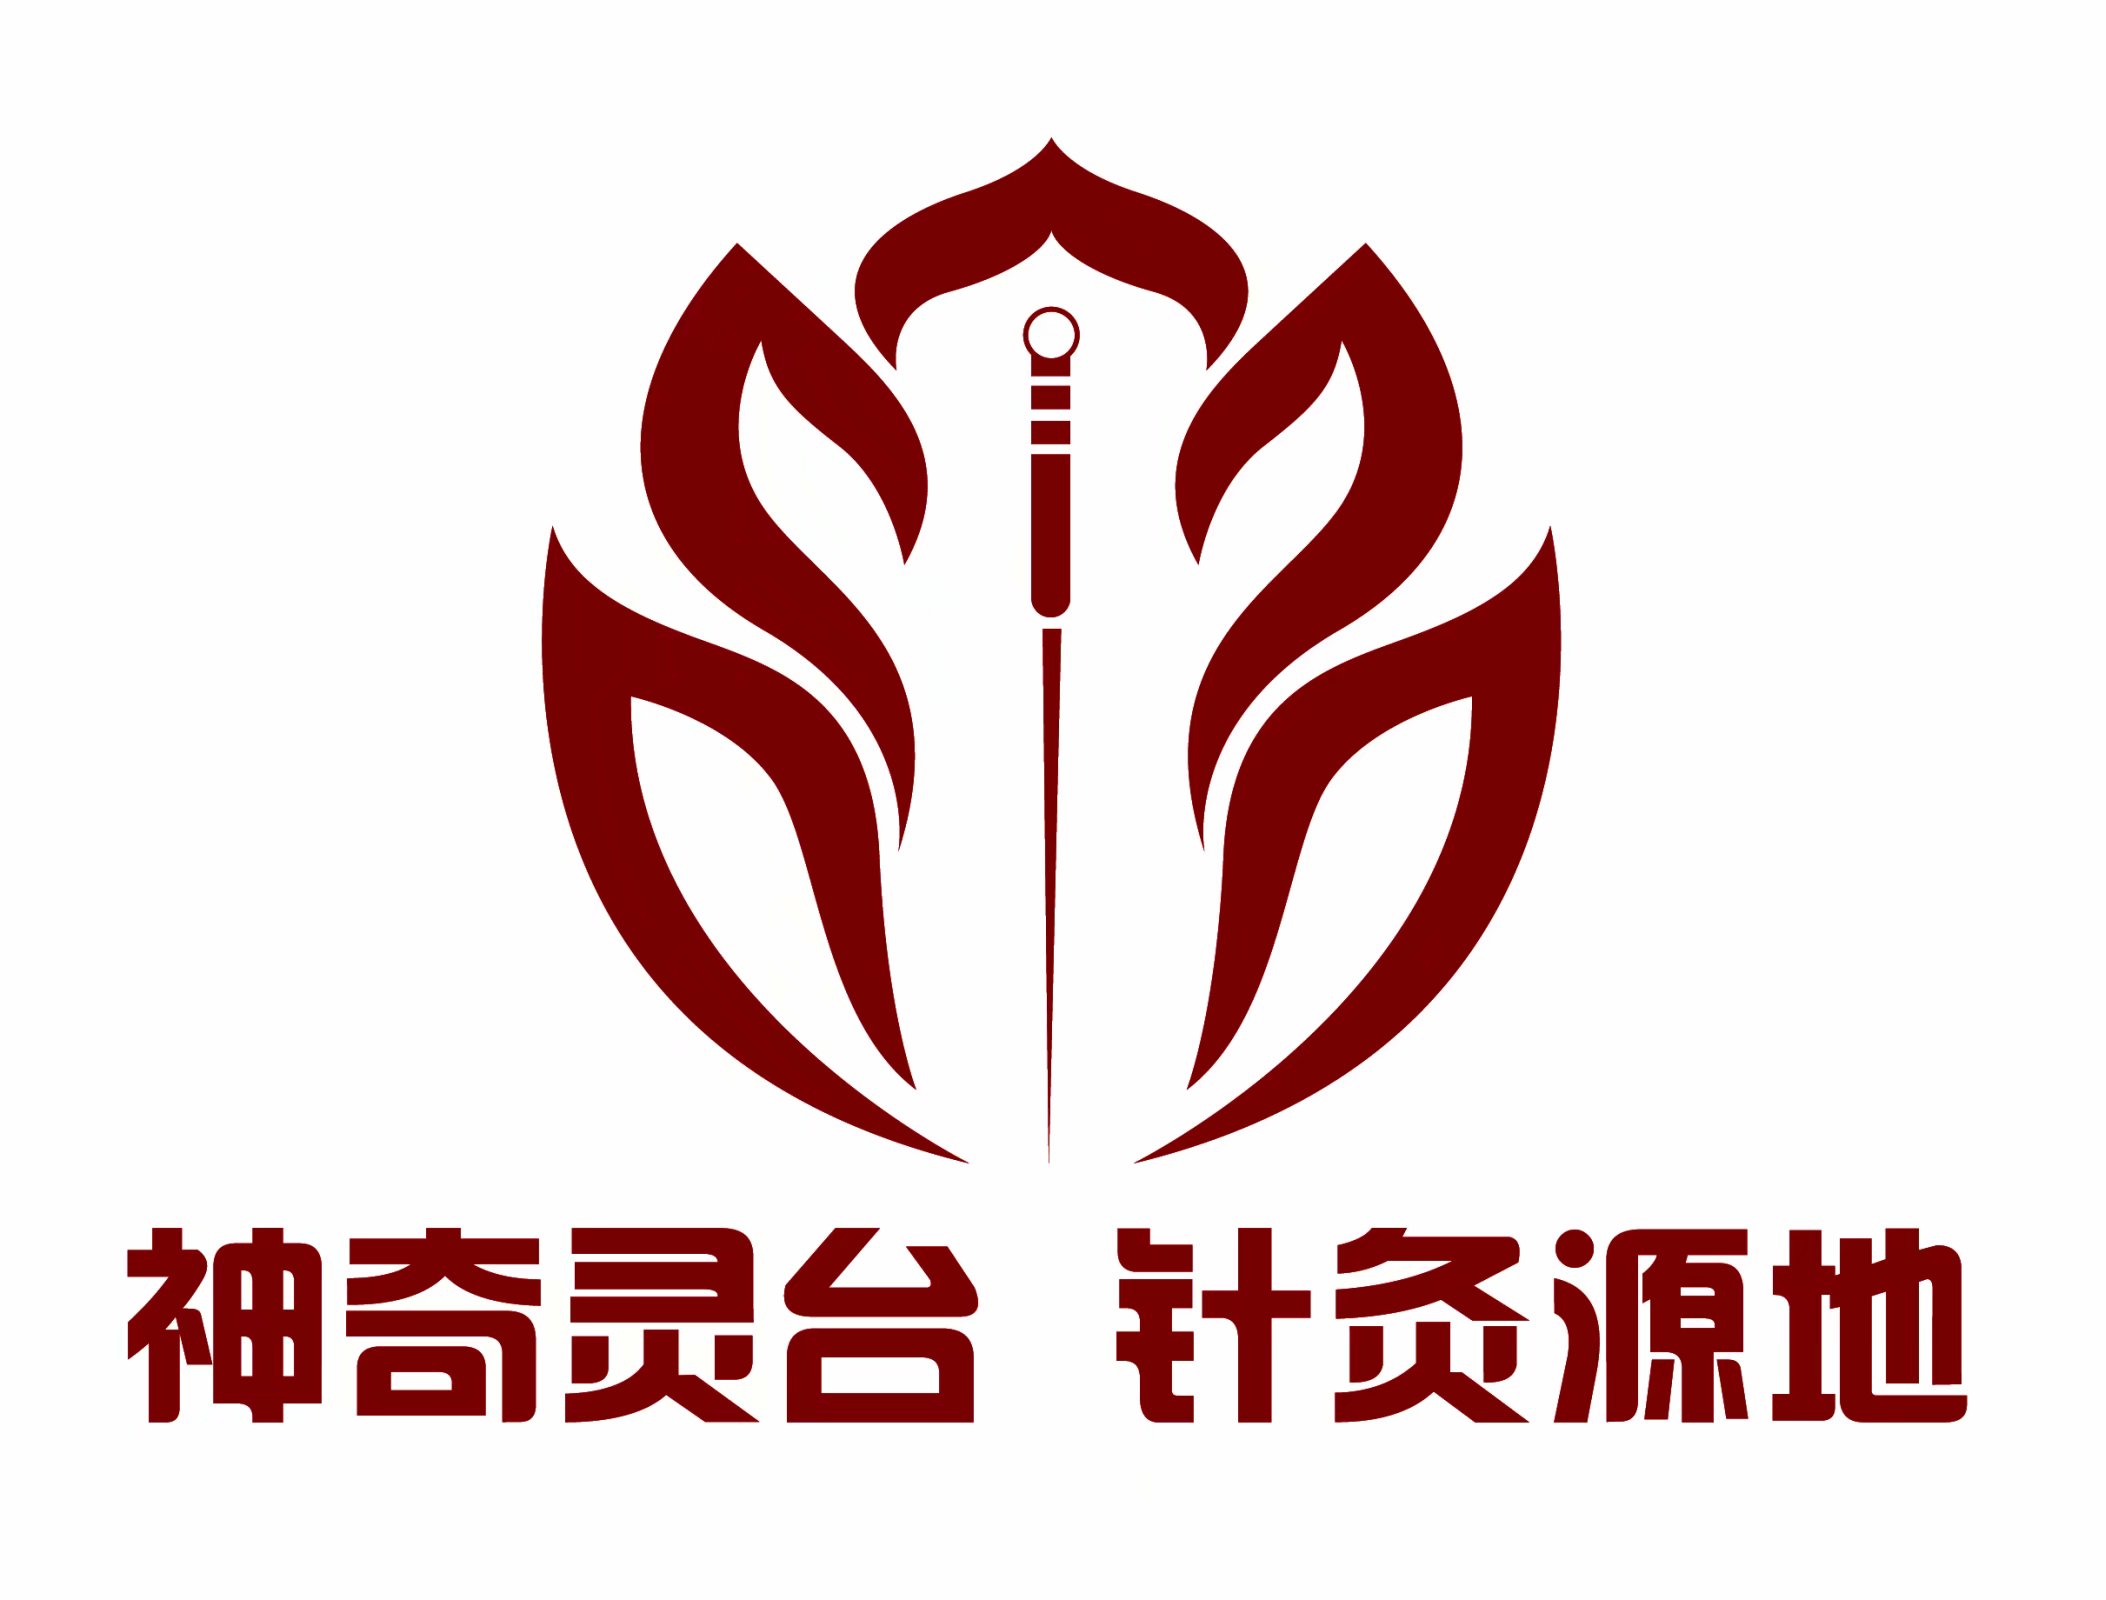 《神奇灵台·针灸源地》logo(版权持有人:李志锋)李志锋与甘肃乡村名